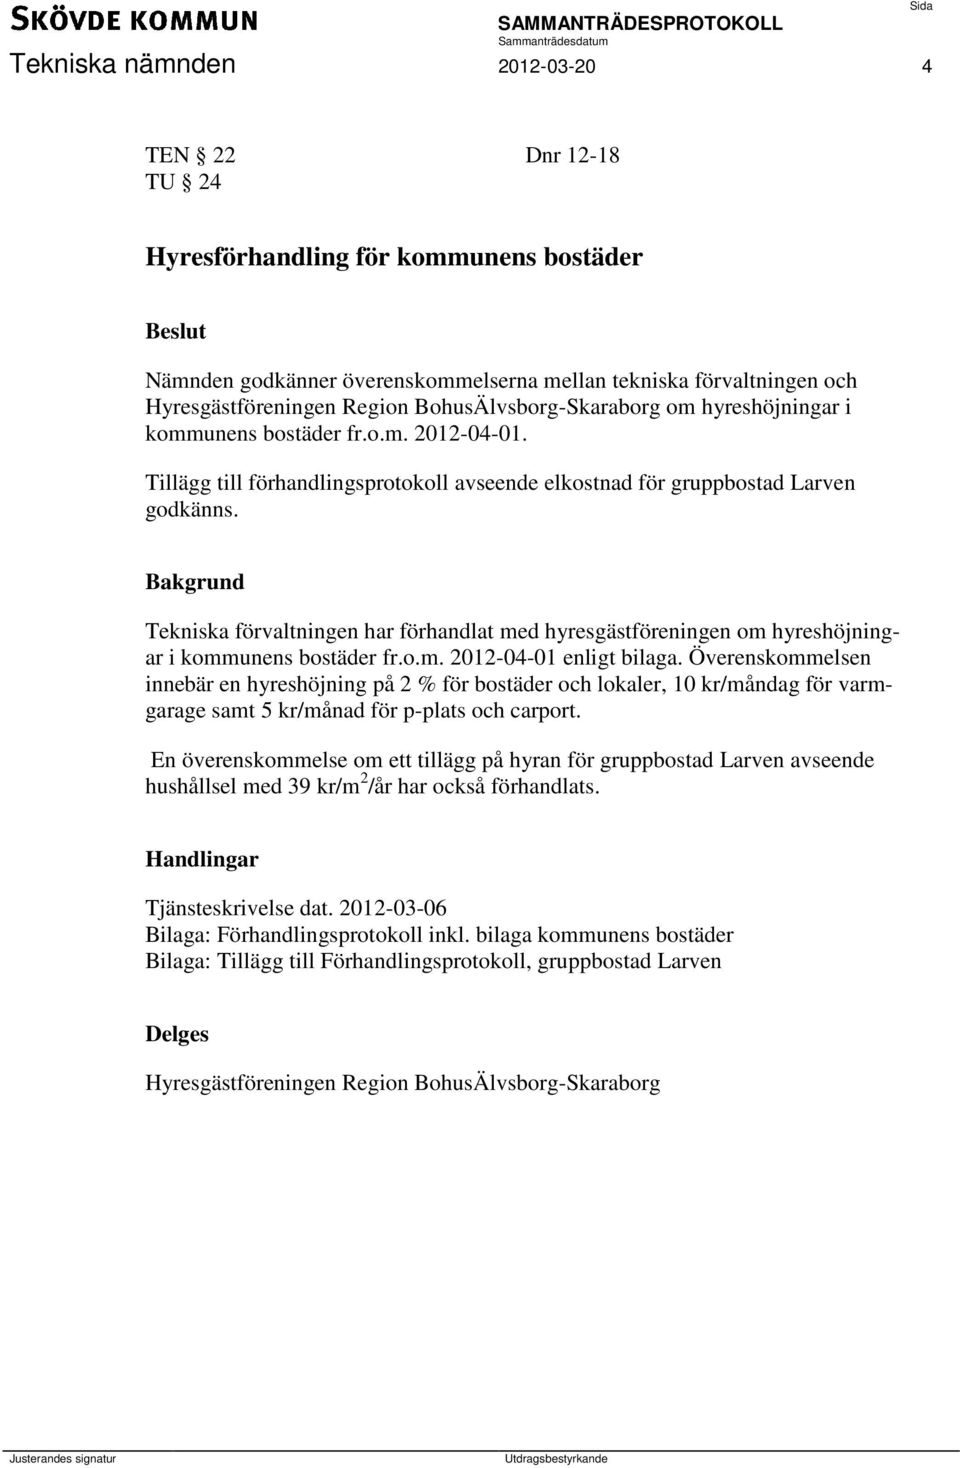 Bakgrund Tekniska förvaltningen har förhandlat med hyresgästföreningen om hyreshöjningar i kommunens bostäder fr.o.m. 2012-04-01 enligt bilaga.